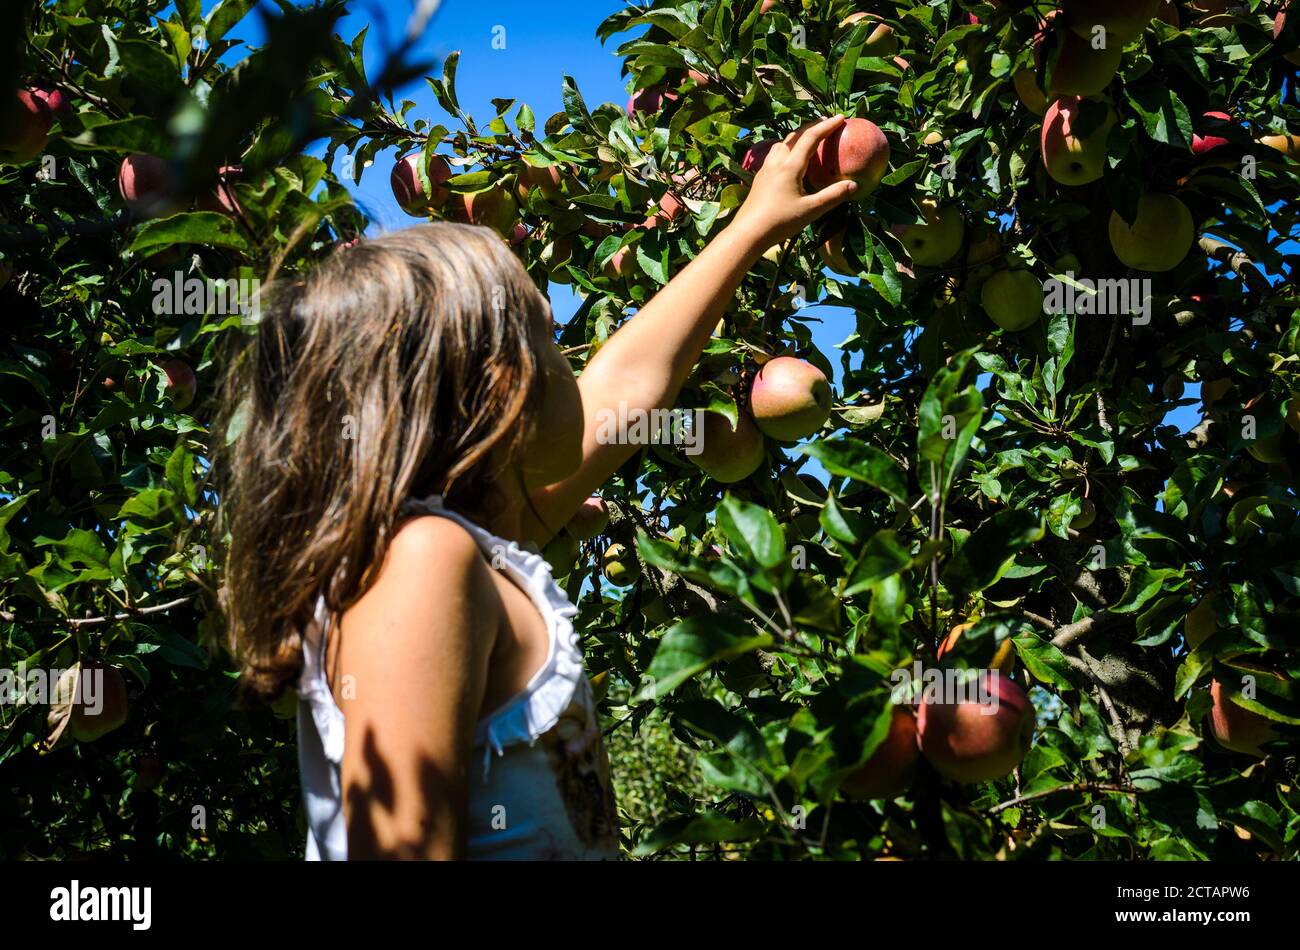 Enfant cueillant à la main de la pomme rouge savoureuse de l'arbre en été. La petite fille récolte des fruits mûrs biologiques d'un arbre dans le verger. Concept d'ea sain Banque D'Images